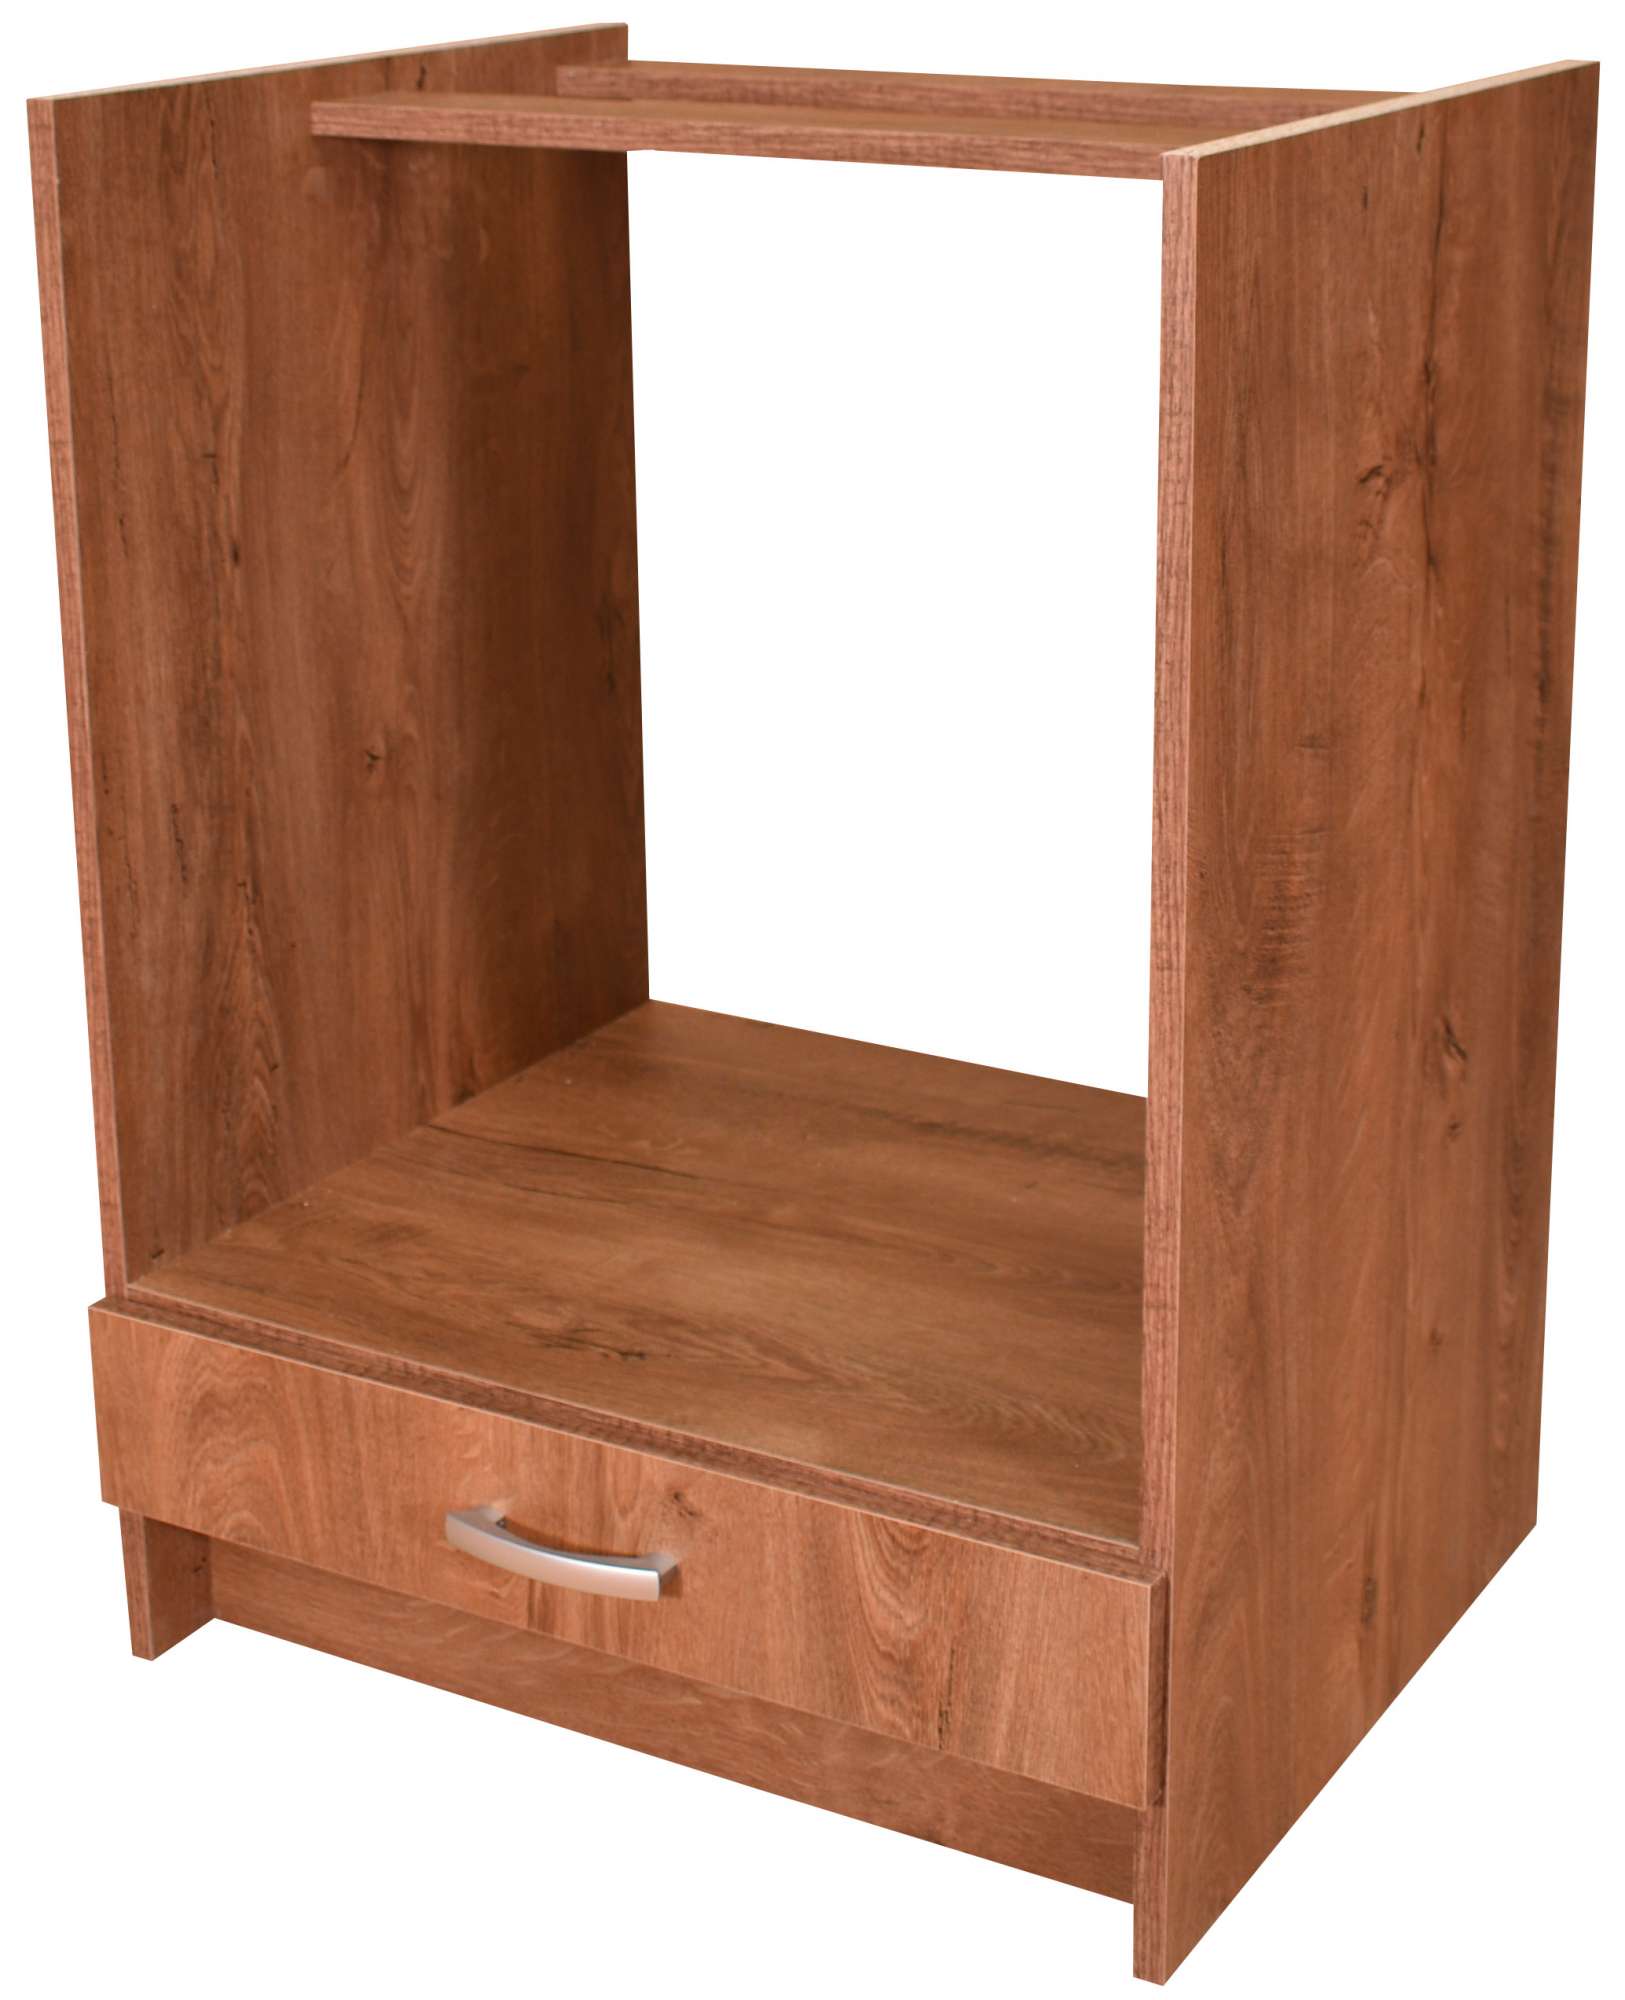 Kuchyňská skříňka pro vestavnou troubu Dub Lefkas 60 cm